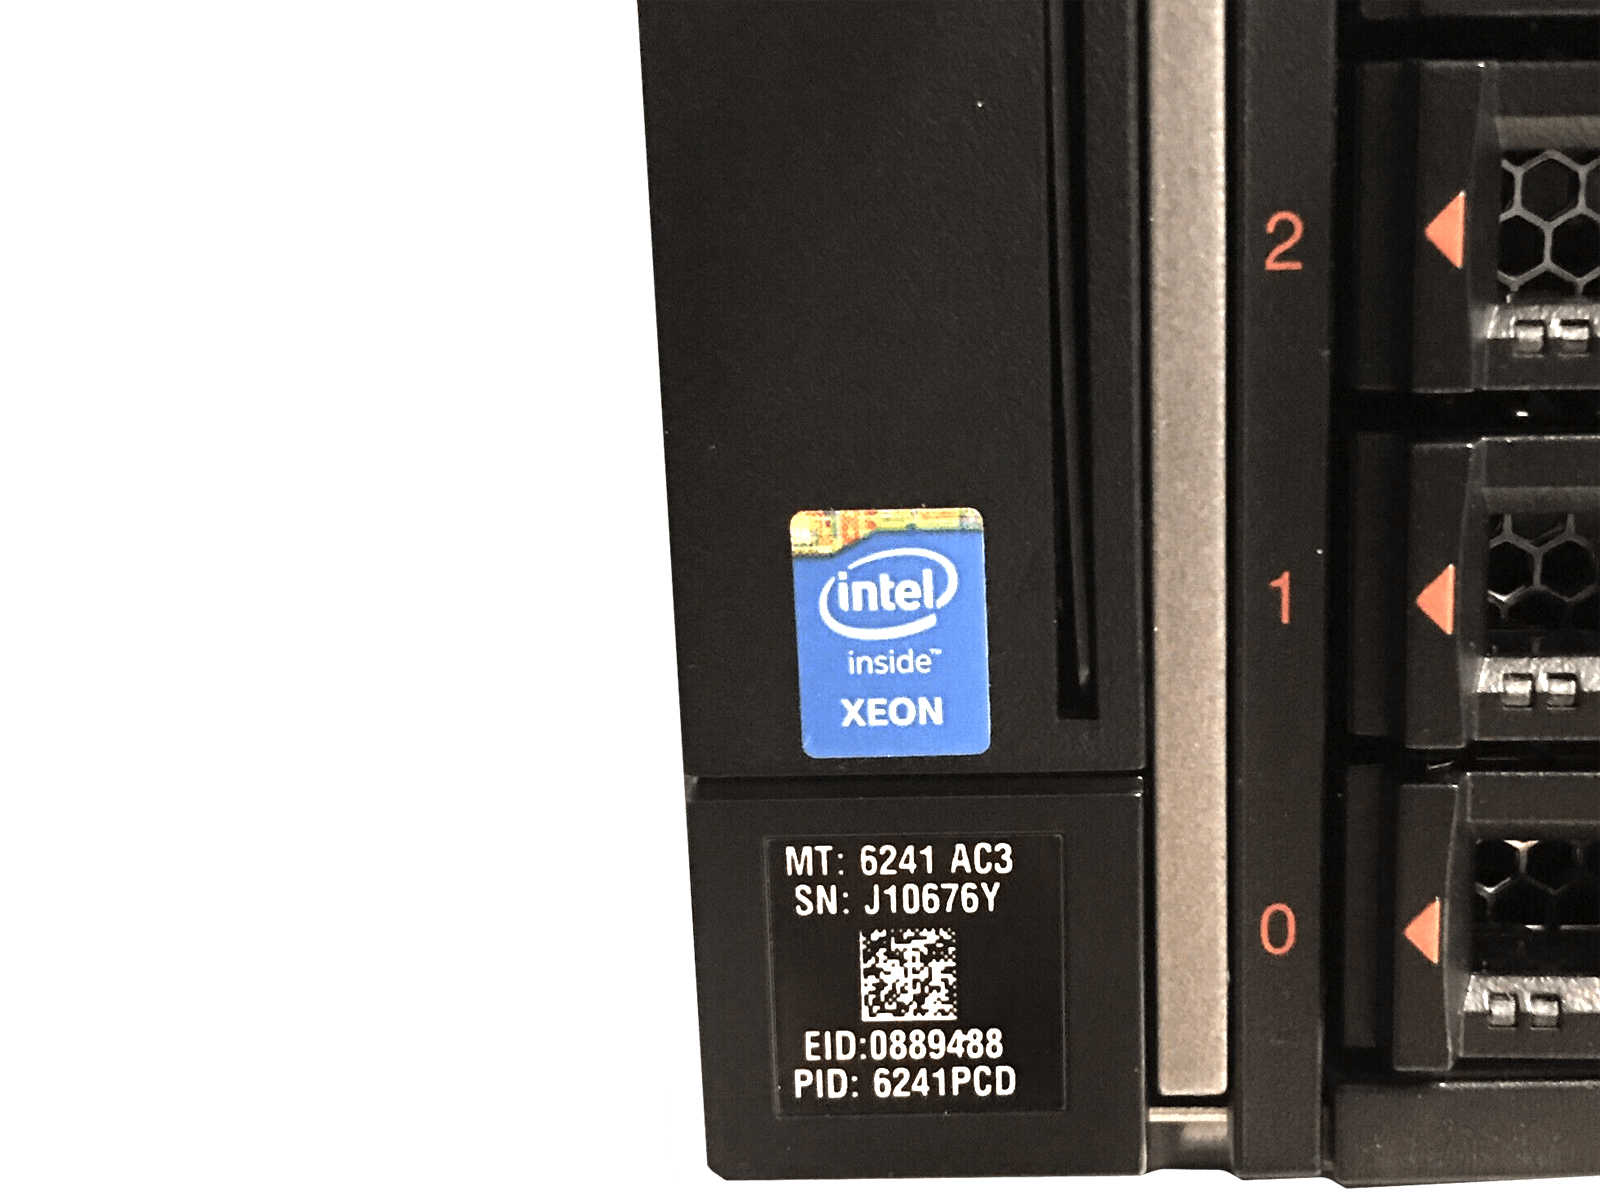 IBM x3850 X6 Server 4x Xeon E7-8893 v3 1536GB DDR4 RAM 3x 300GB 15K 4x 1400W PSU